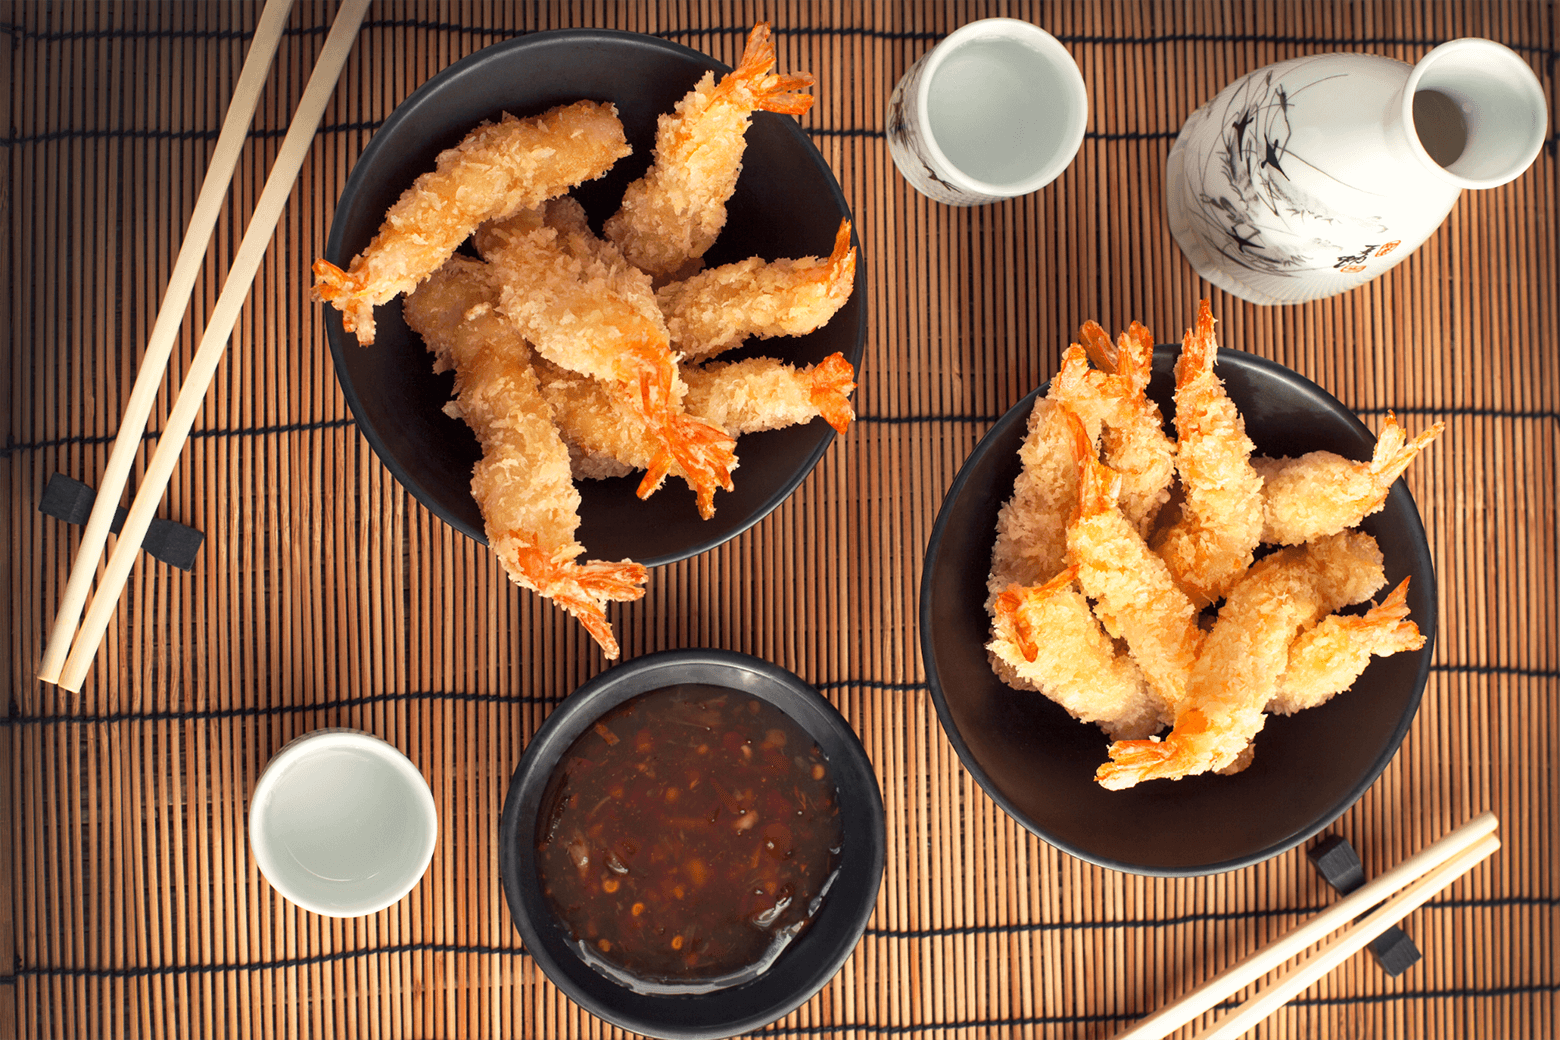 Shrimp tempura dish